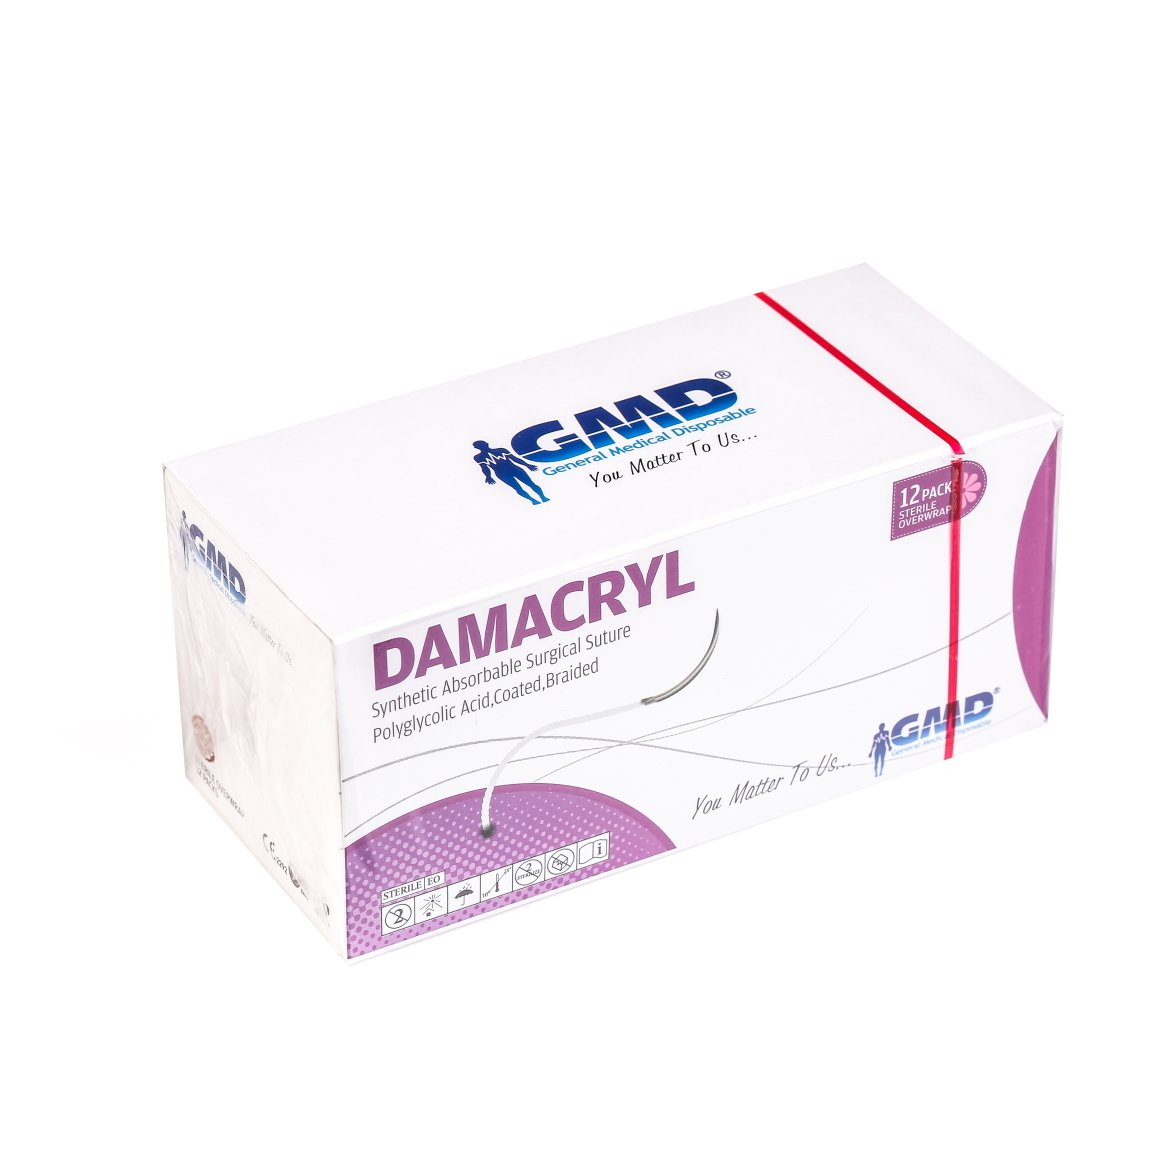 Damacryl Emilebilir Cerrahi Sütür - PGA İplik - USP:2-0-75cm - 3/8 Daire 26 mm - Ters Keskin İğne